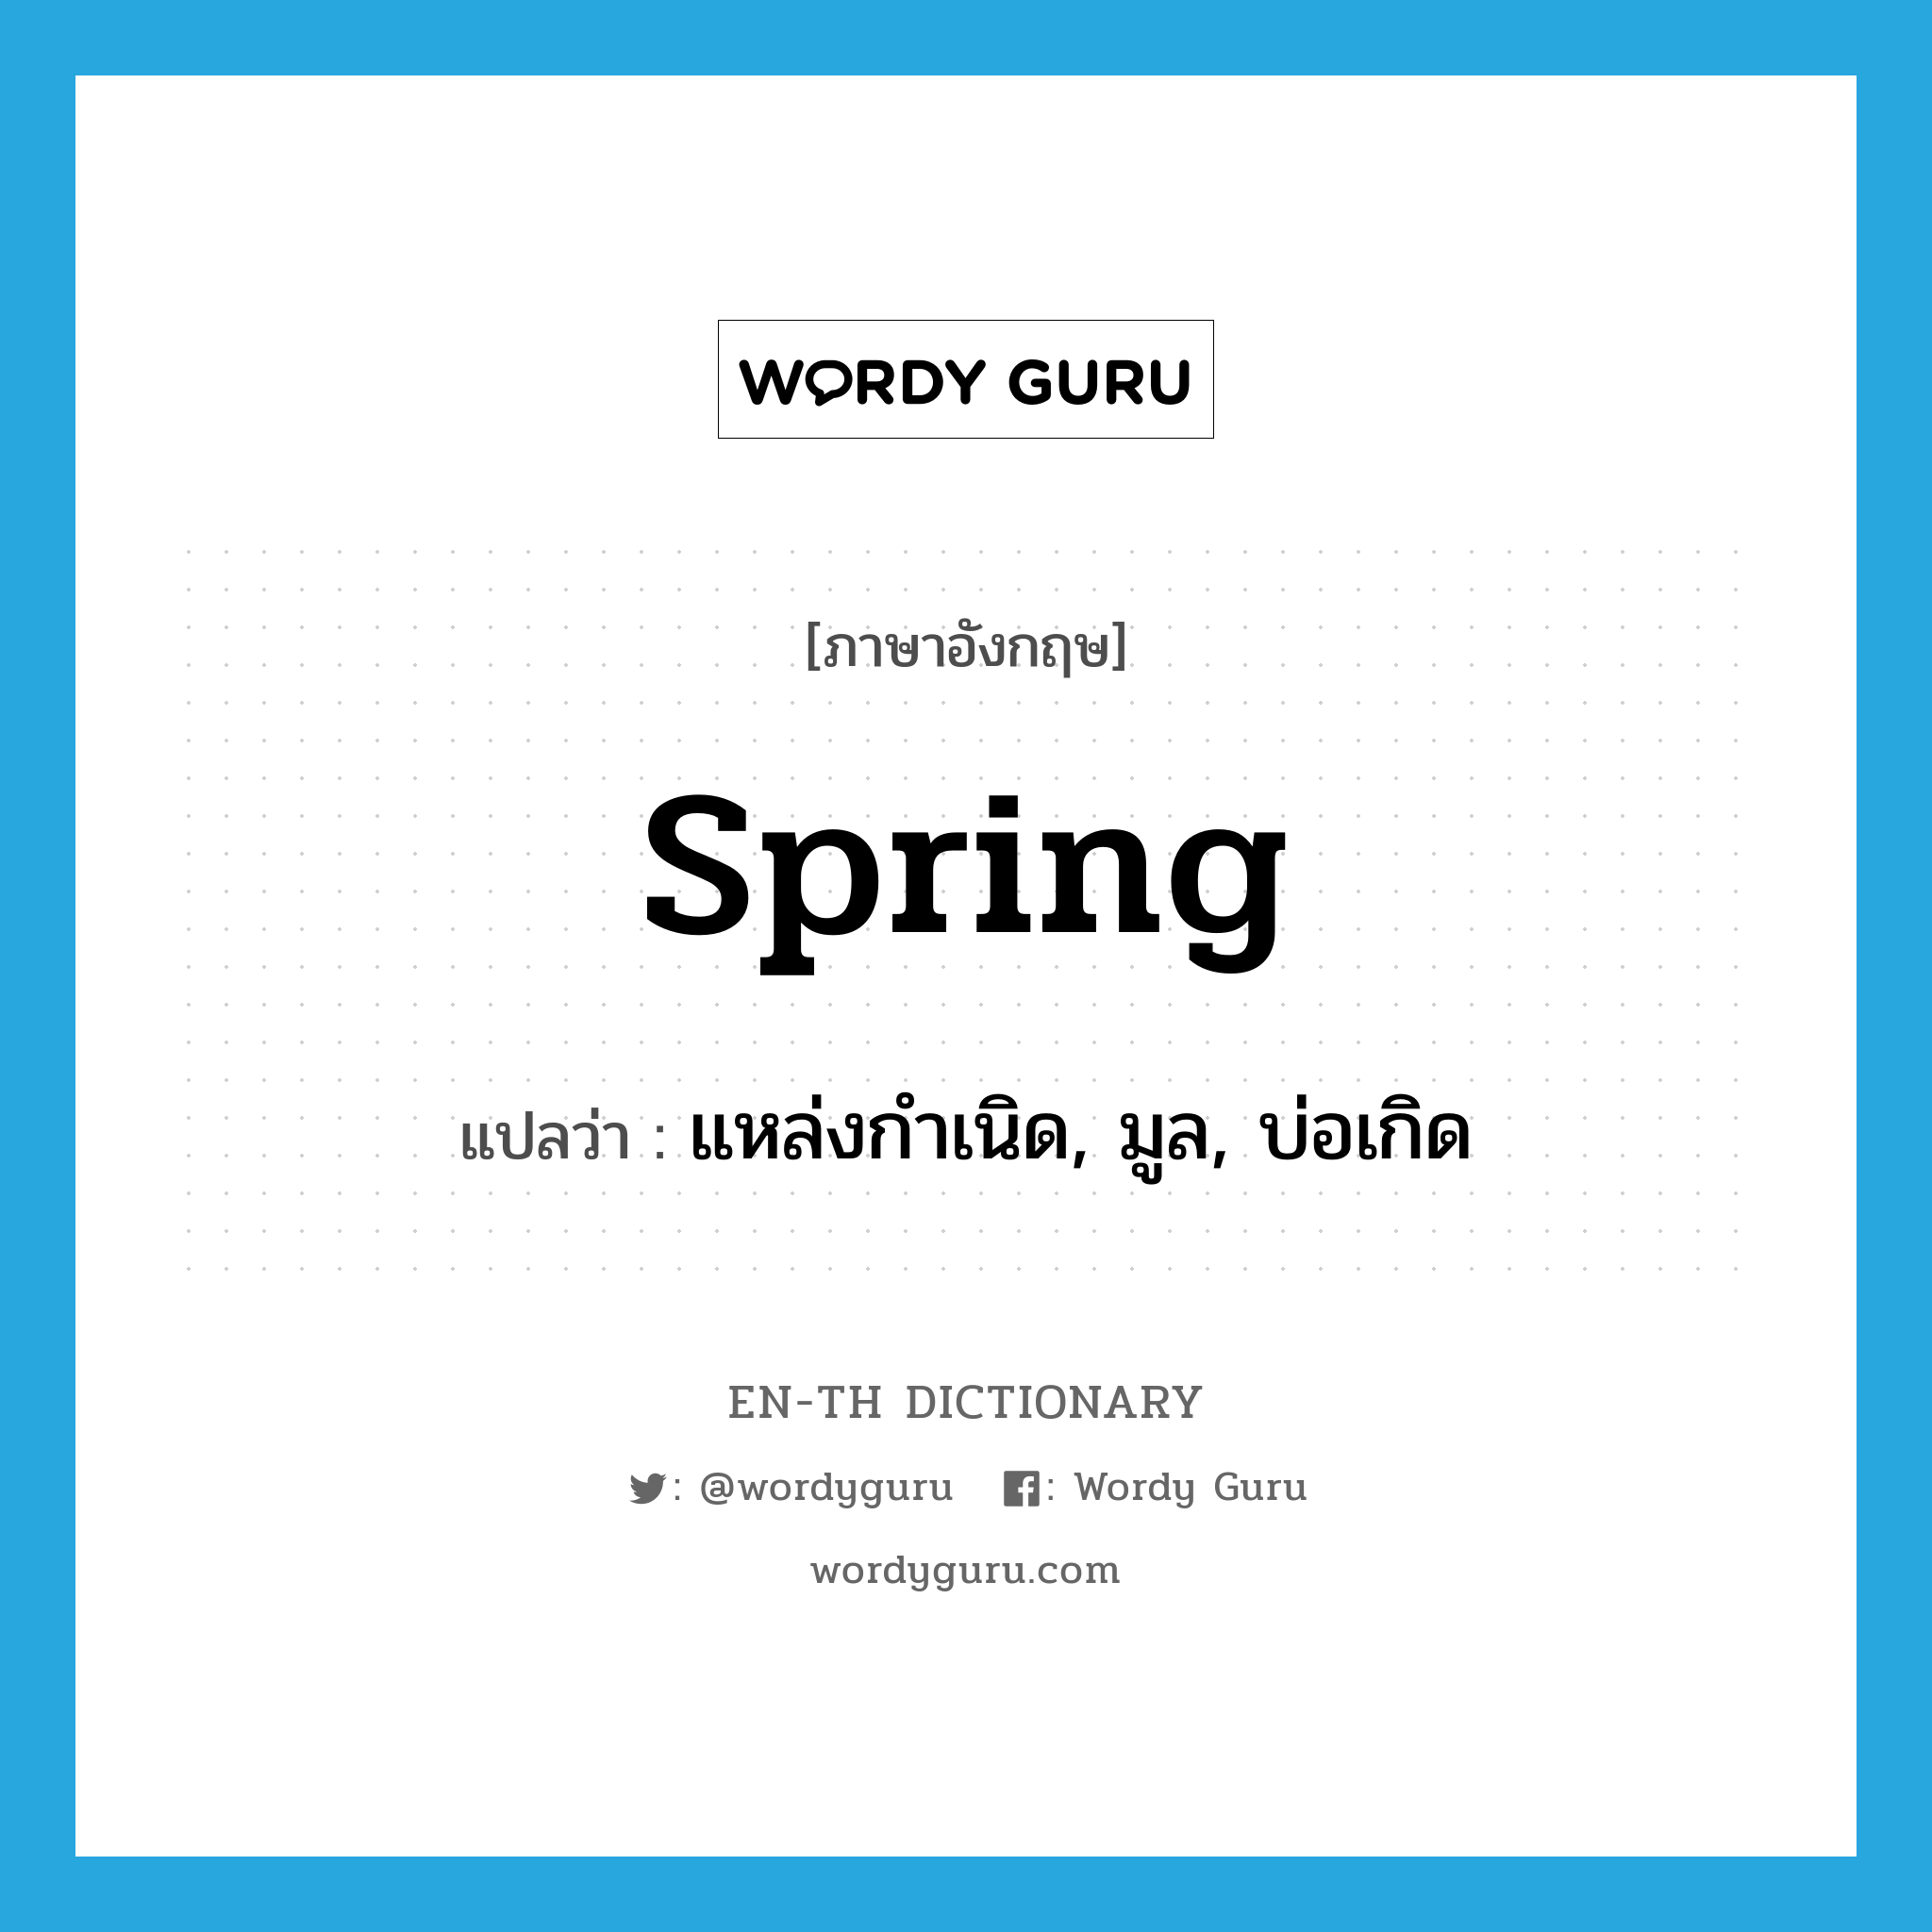 spring แปลว่า?, คำศัพท์ภาษาอังกฤษ spring แปลว่า แหล่งกำเนิด, มูล, บ่อเกิด ประเภท N หมวด N